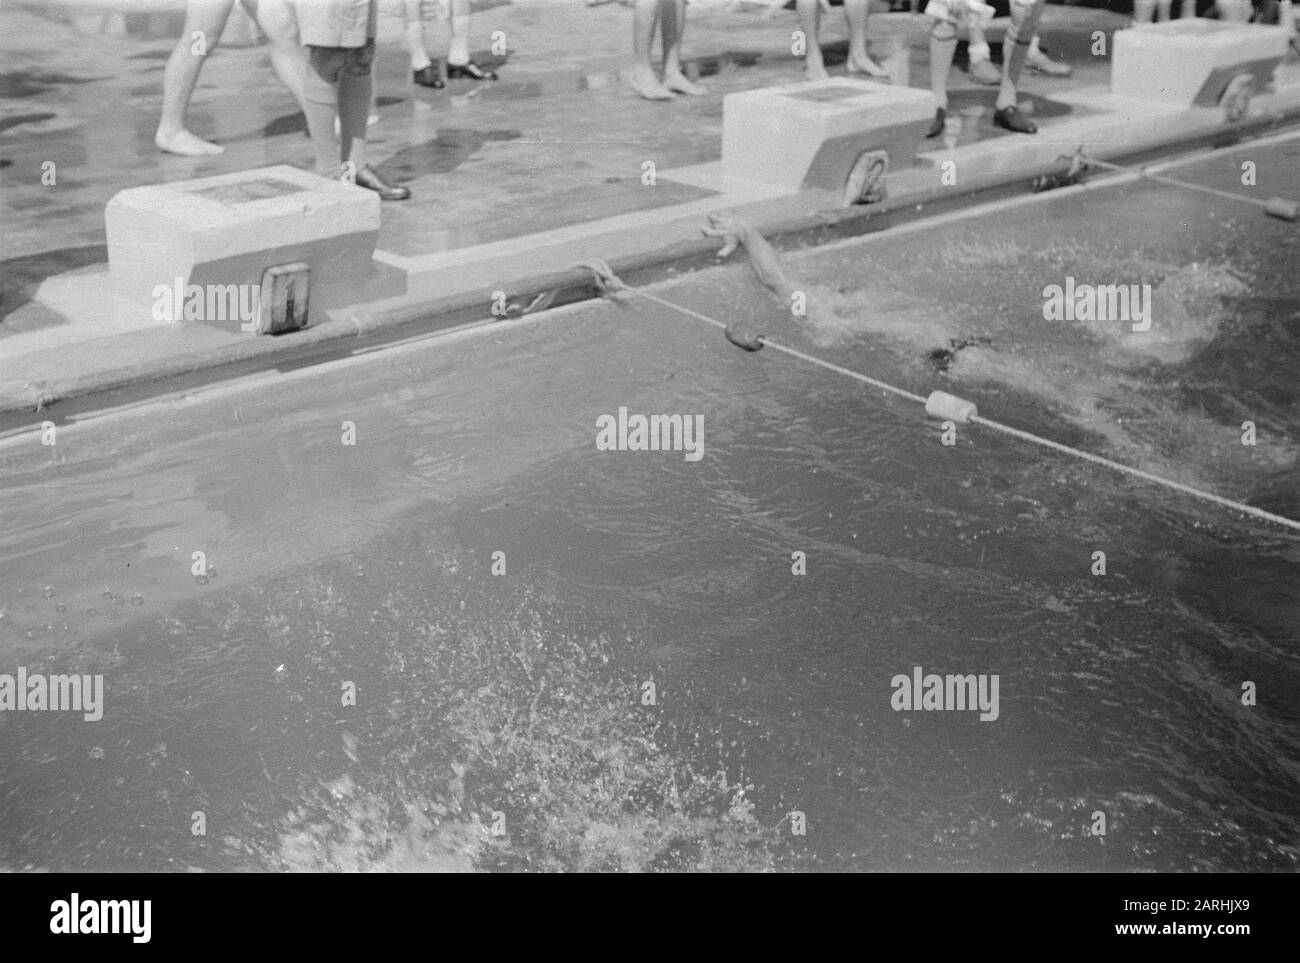 Competizioni sportive durante i giorni di Pasqua partite di nuoto Data: 6  aprile 1947 Località: Indonesia, Indie Orientali Olandesi Foto stock - Alamy